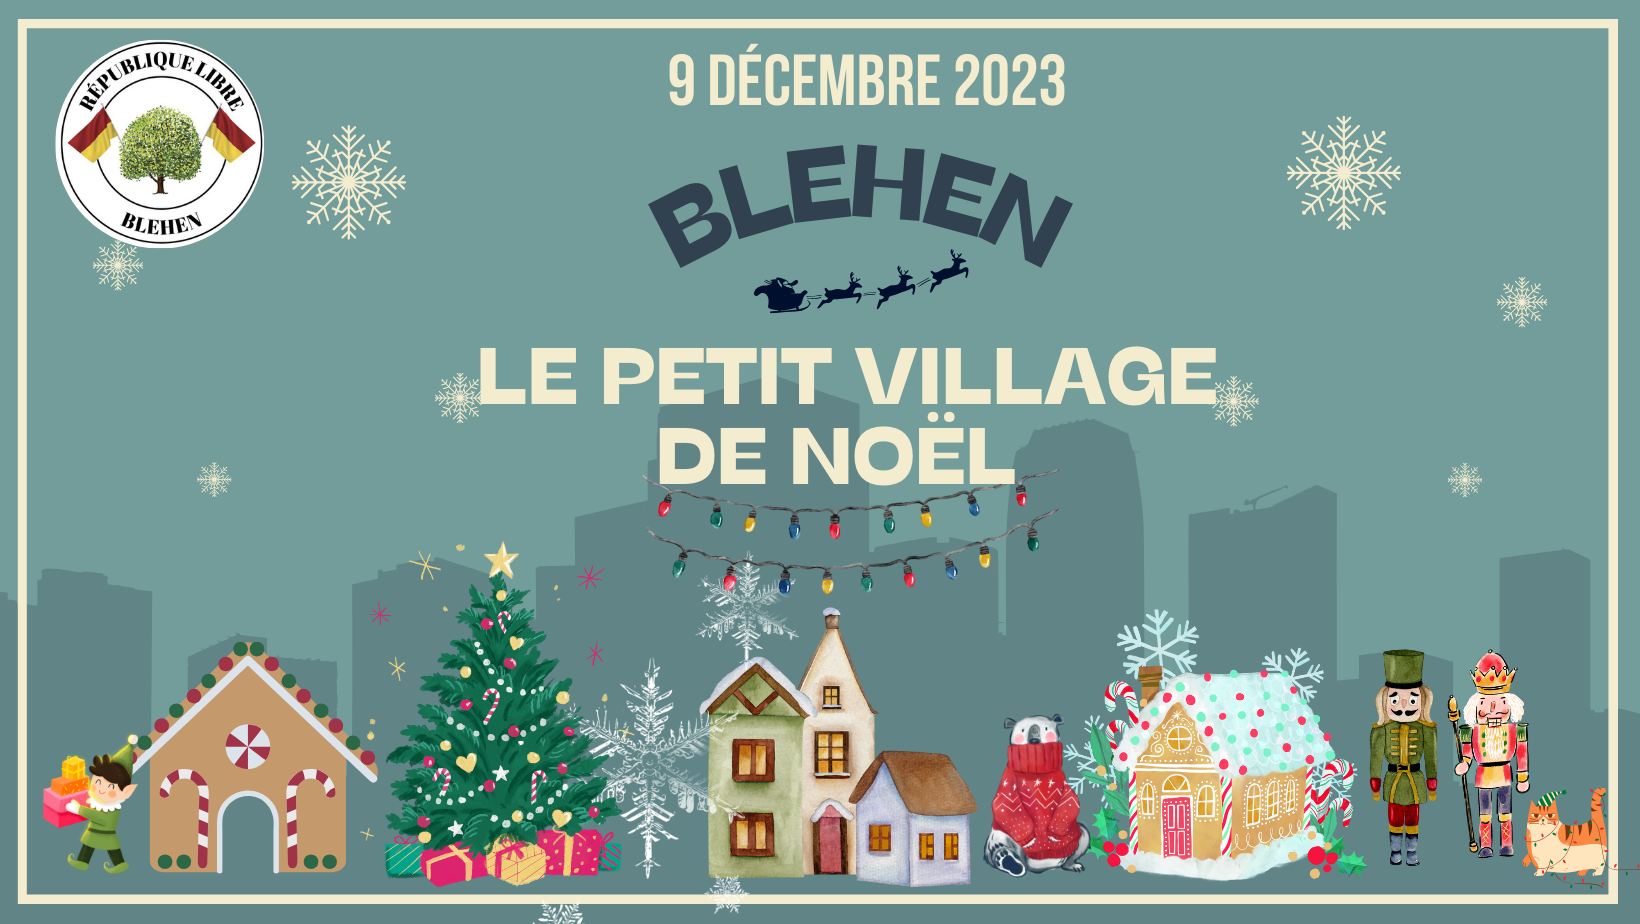 Petit village de Noël à Blehen